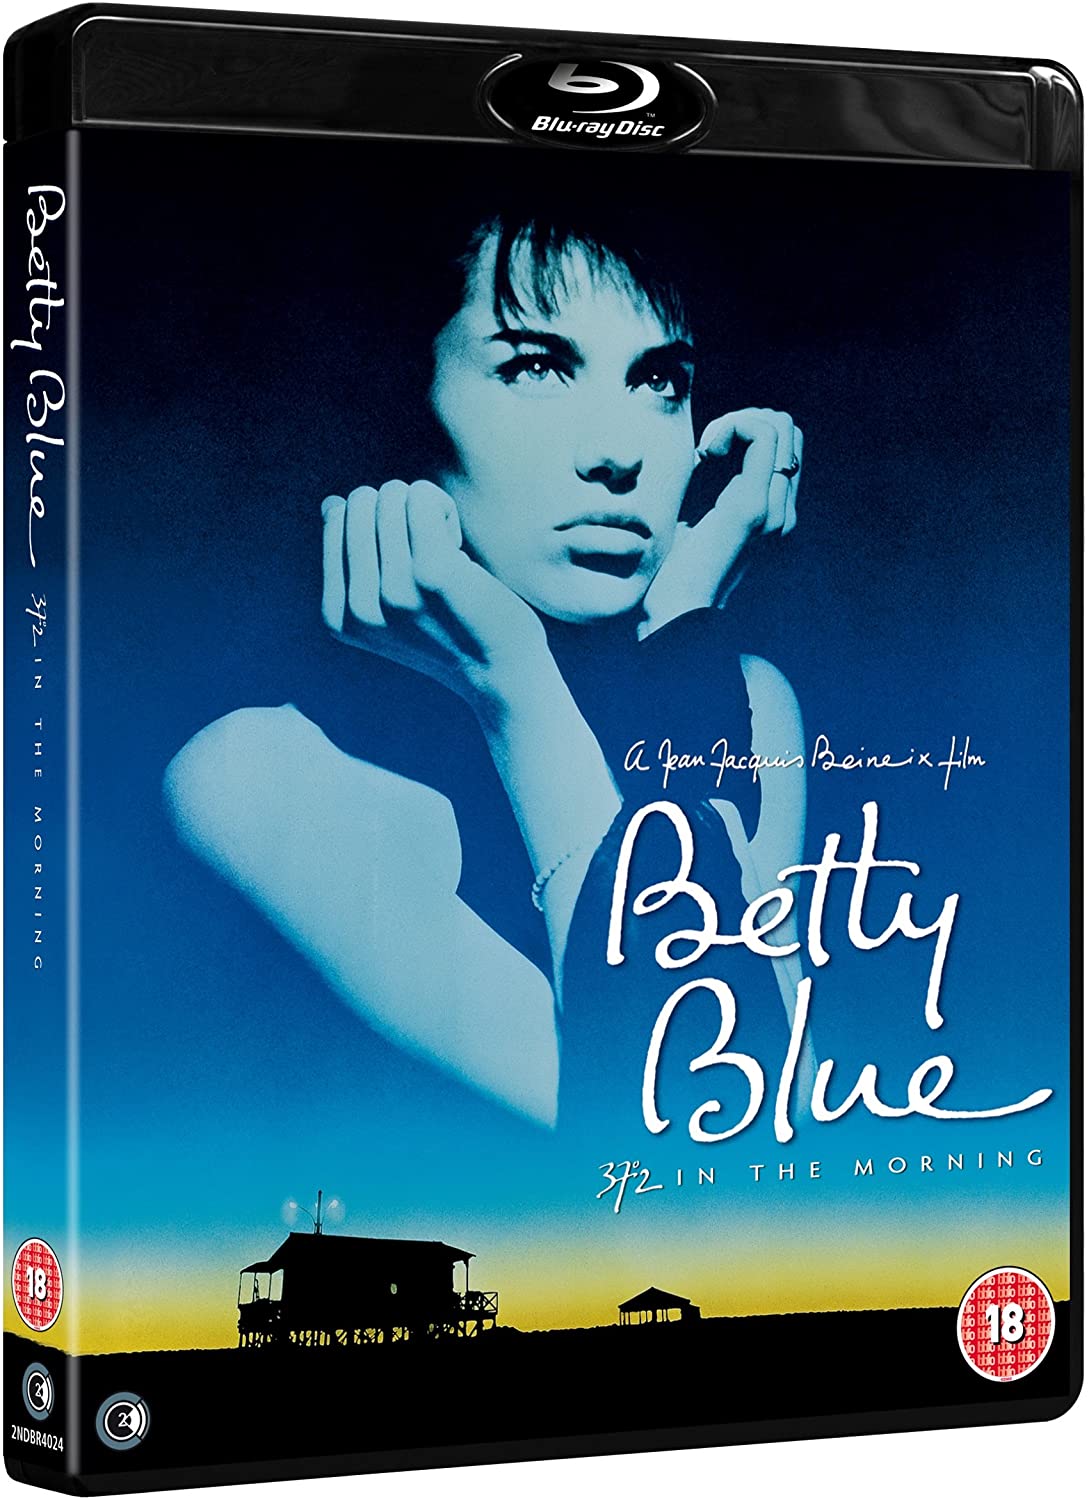 巴黎野玫瑰 德版原盘 未刪减导演剪辑版[DIY简繁+简繁英双语字幕] Betty Blue 1986 Director's Cut PROPER 1080p GER Blu-ray AVC LPCM 2.0-IWUBEN@OurBits[45.86GB]-1.jpg